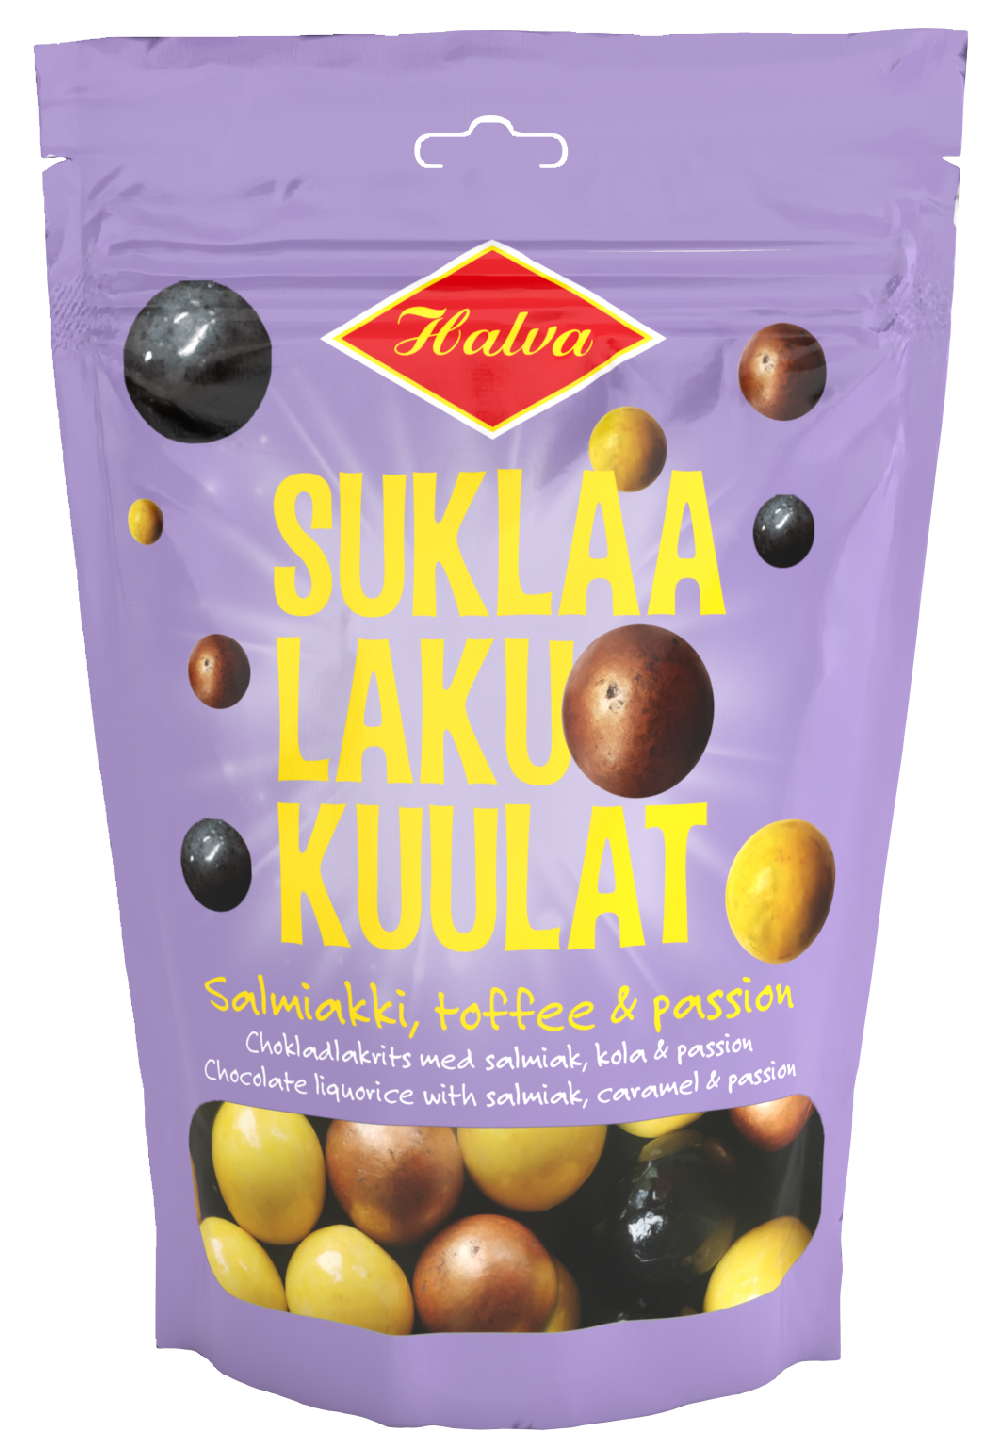 Halva Suklaalakukuulat salmiakki, toffee & passion 125g